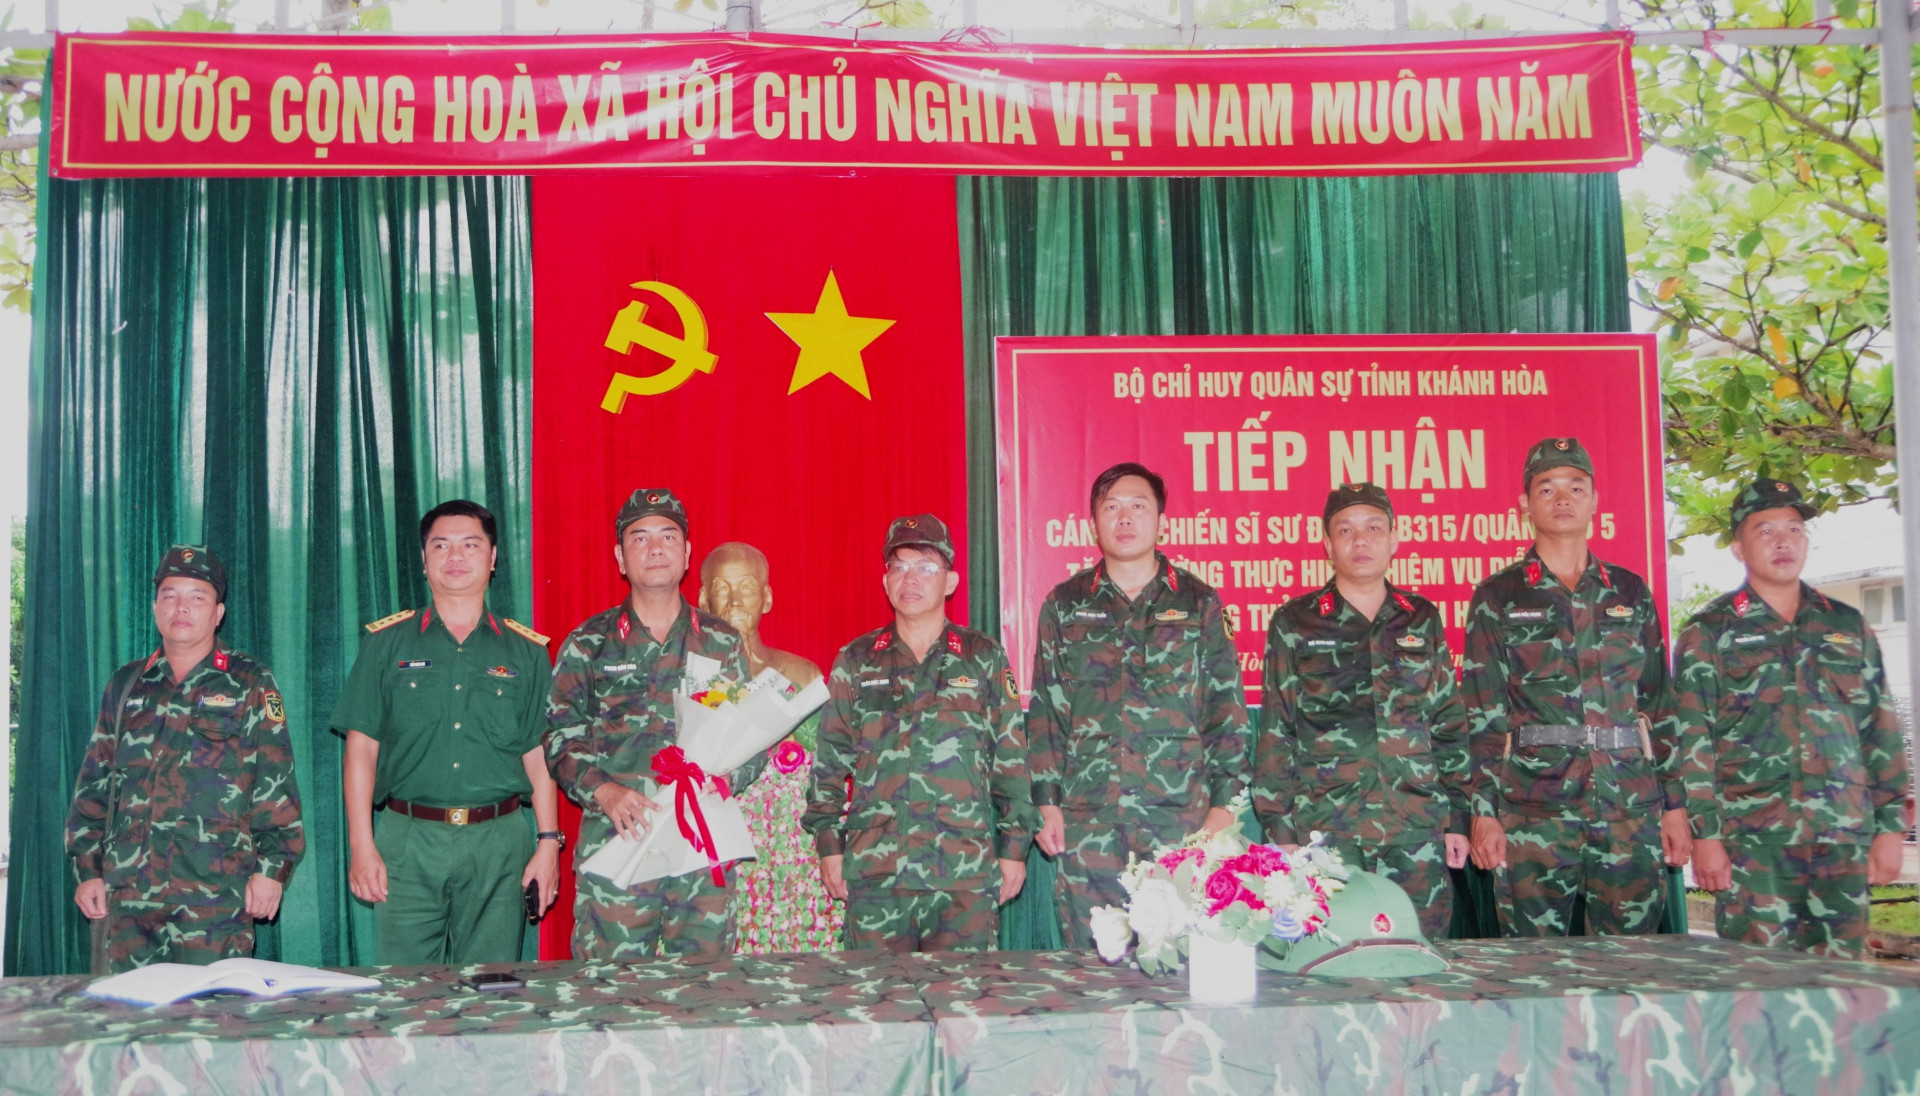 Đại diện Bộ CHQS tỉnh Khánh Hòa và Sư đoàn Bộ binh 315 chụp hình lưu niệm tại buổi tiếp nhận.